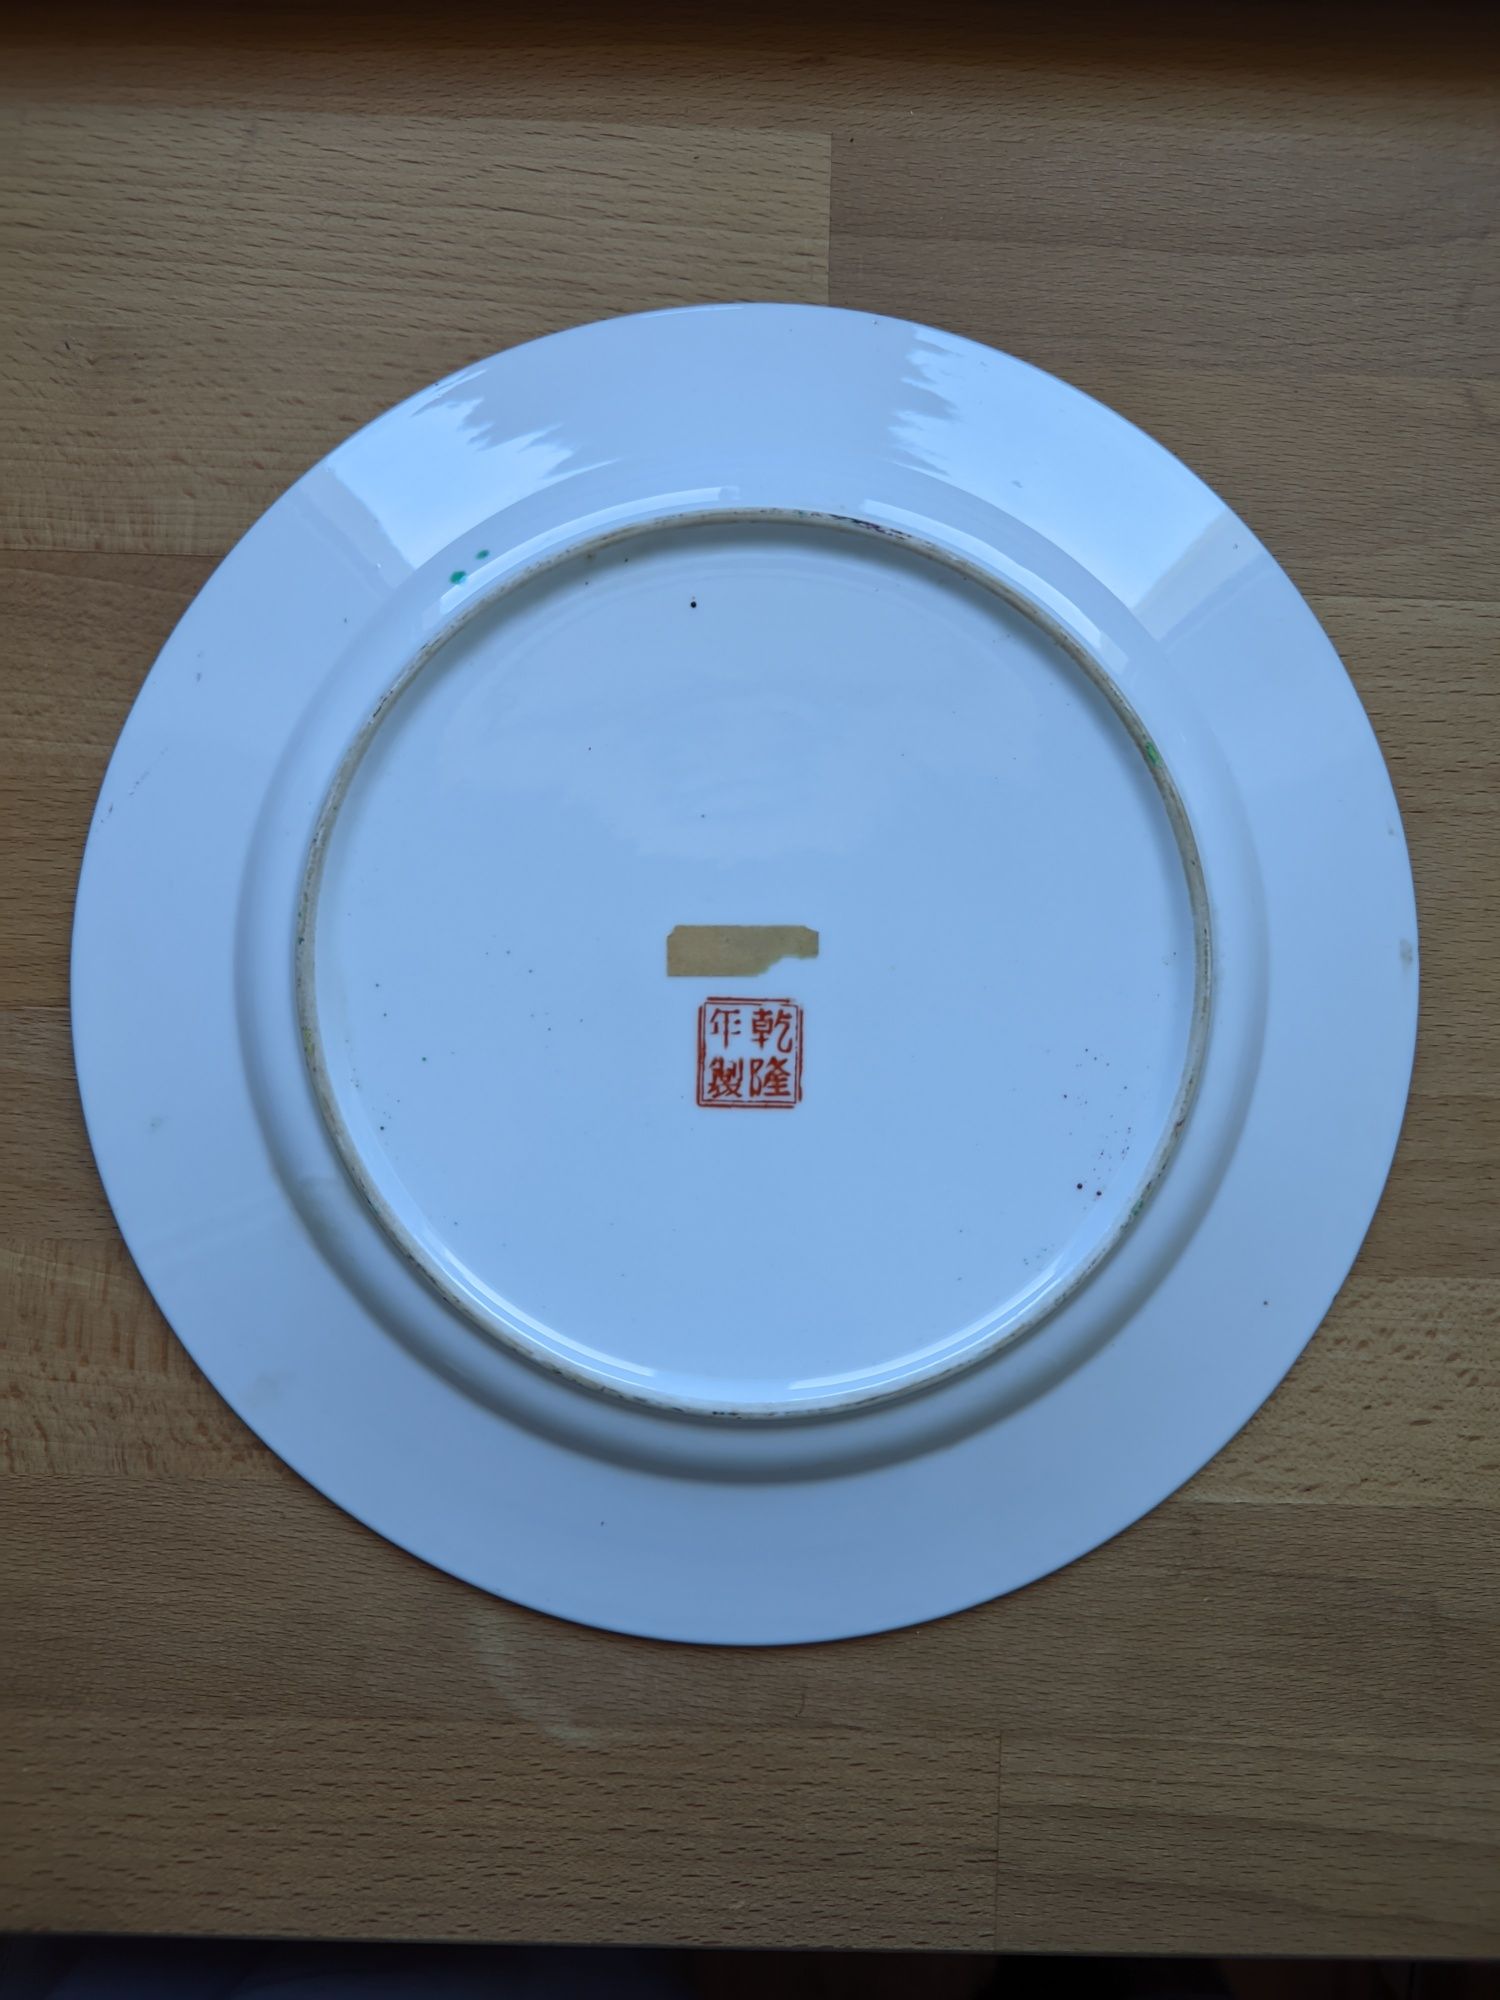 Loiça chinesa - 3 pratos